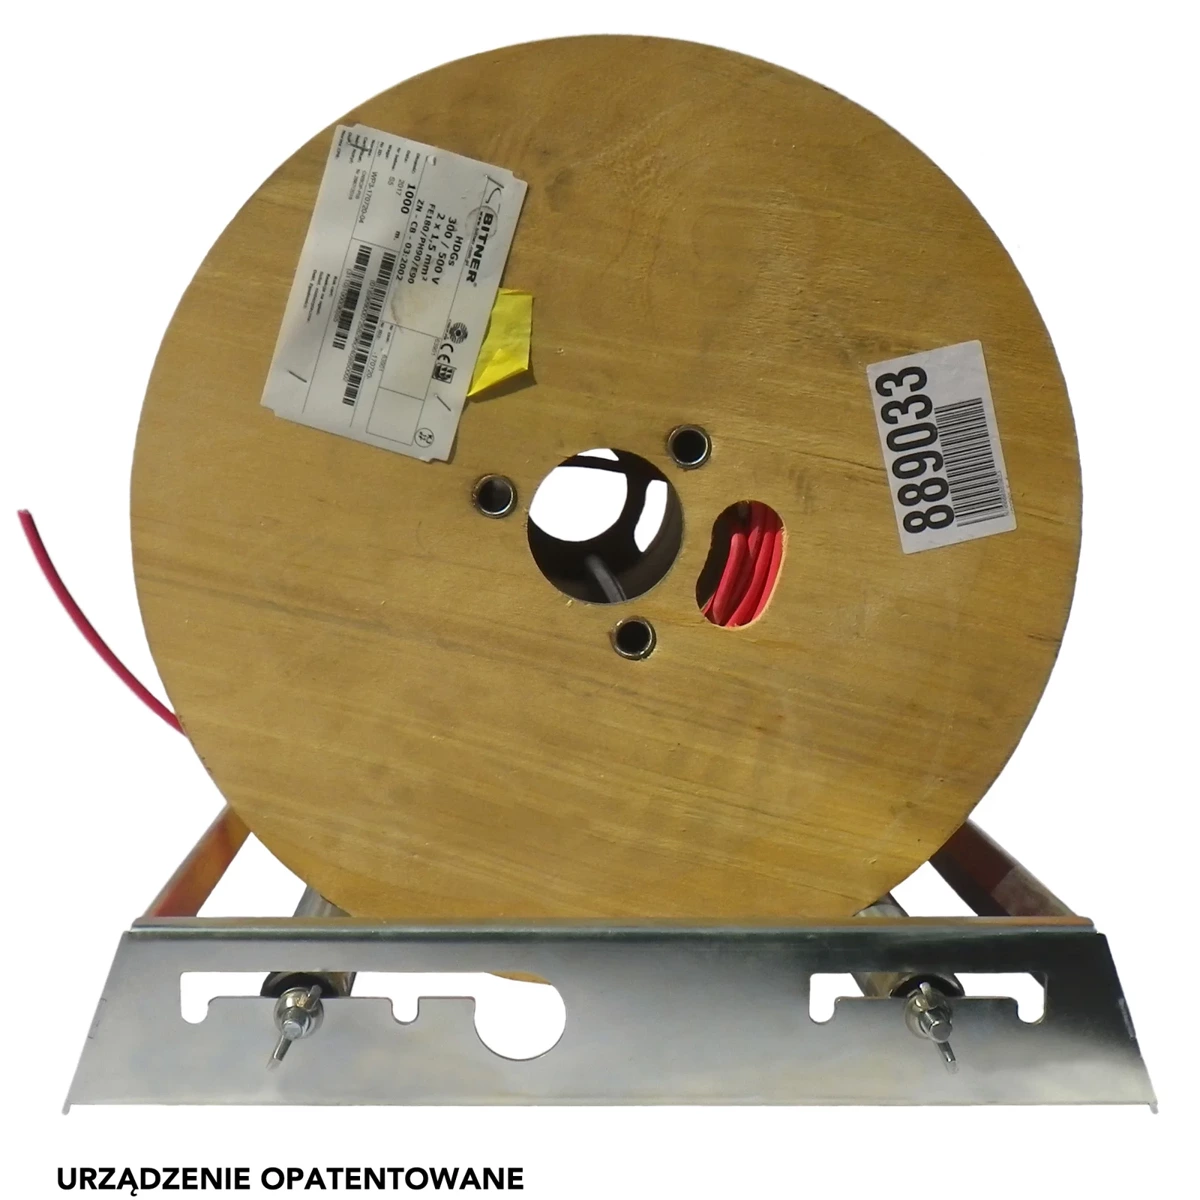 Стійка для розмотування кабелів та електричних проводів з барабанів і котушок, макс. ширина барабана 370 мм - SB-370